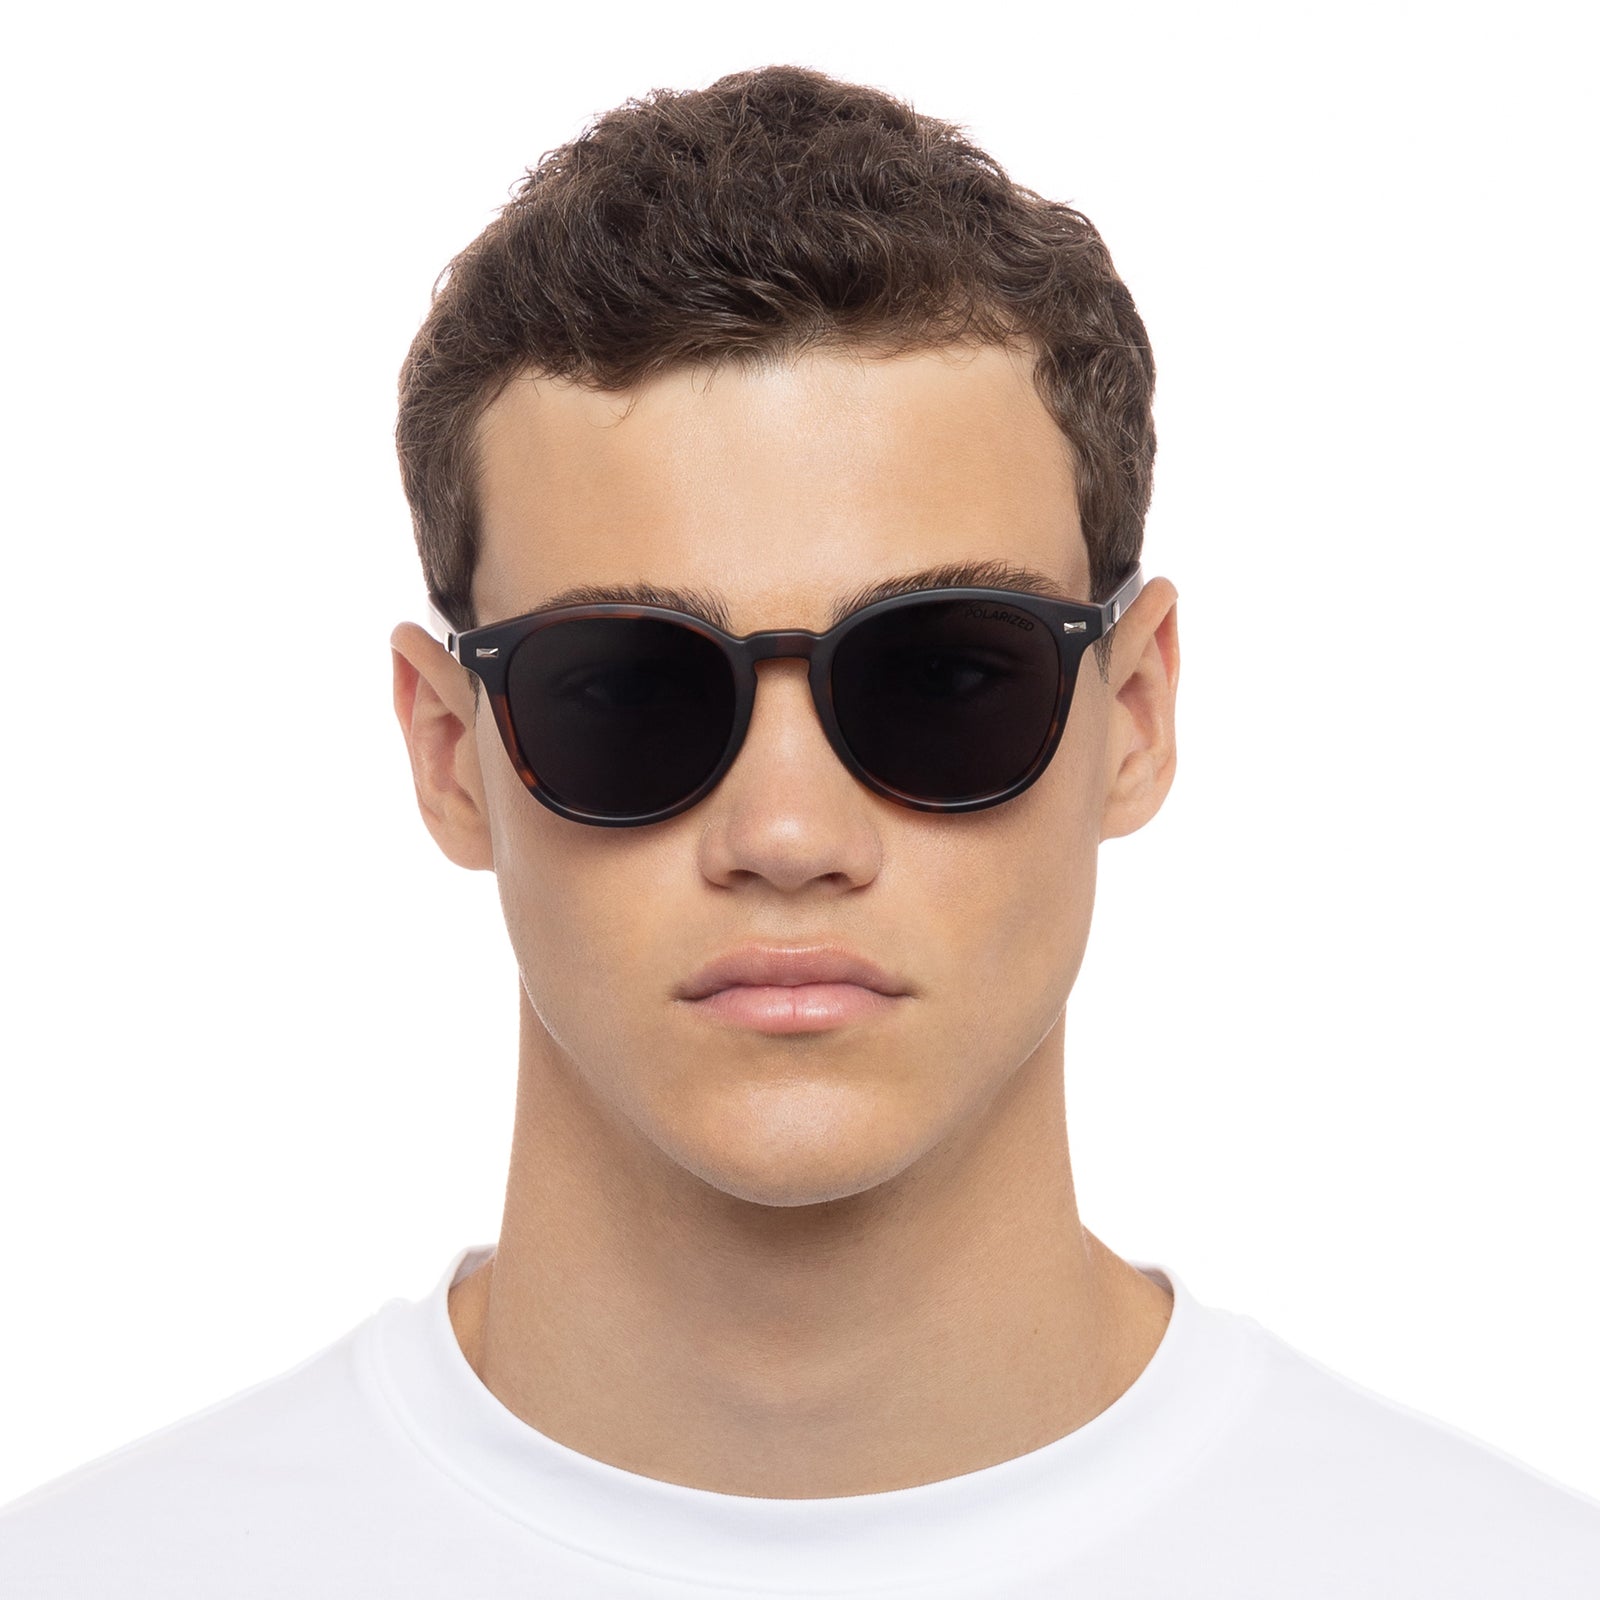 Polarised Sunglasses Men, Polarized Sunglasses Las